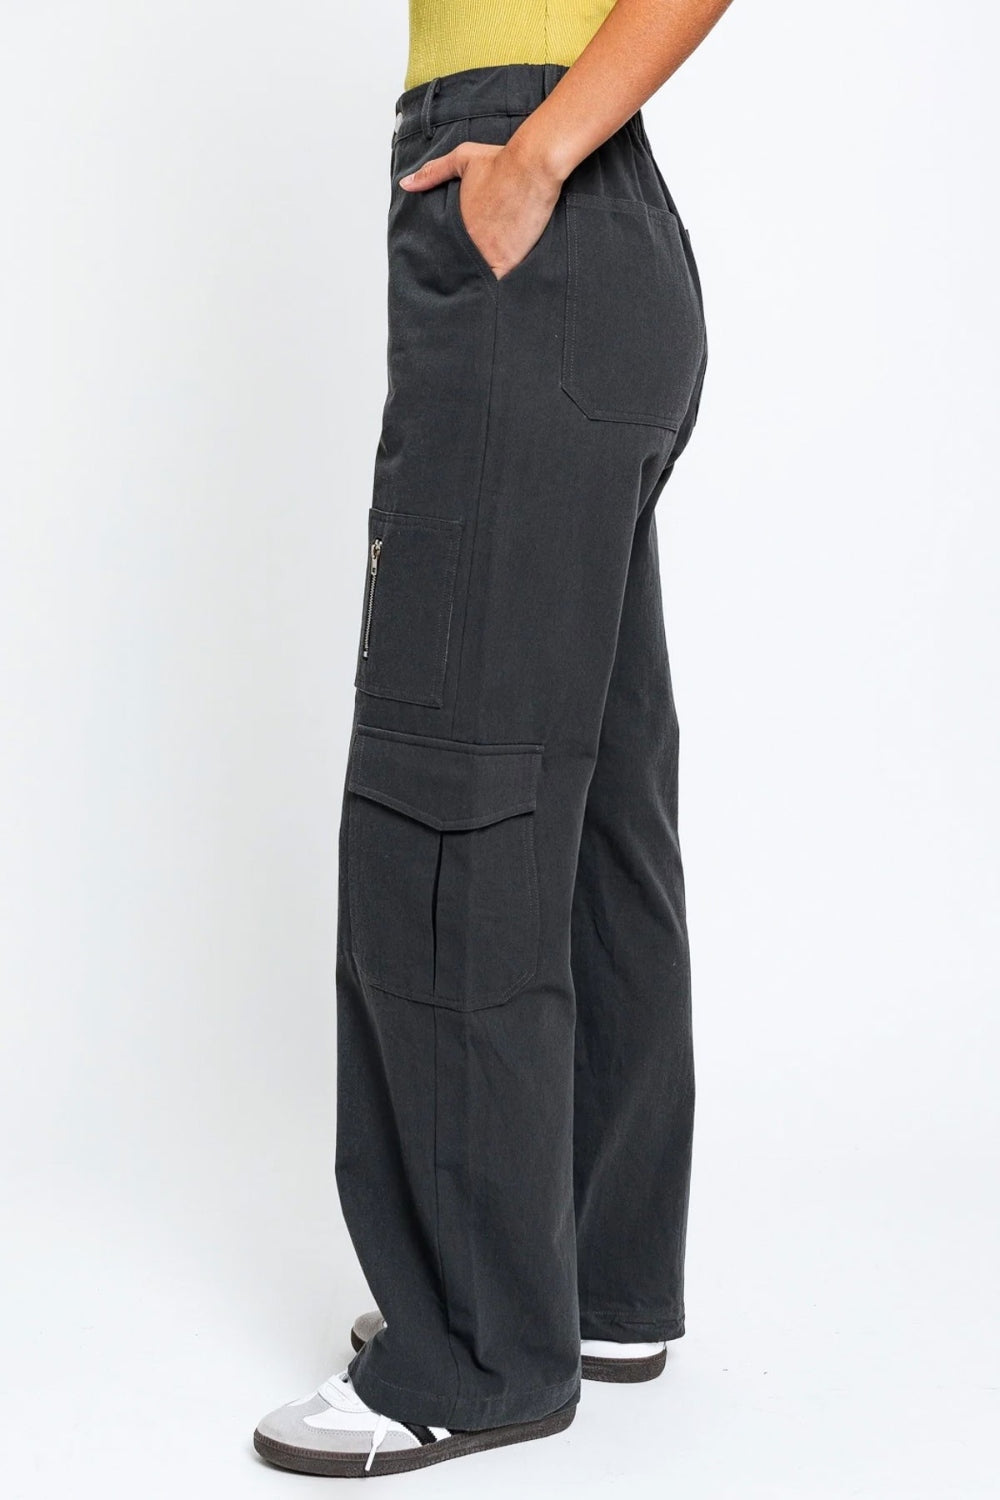 Tasha Apparel – Cargohose mit hoher Taille und weitem Bein und Taschen